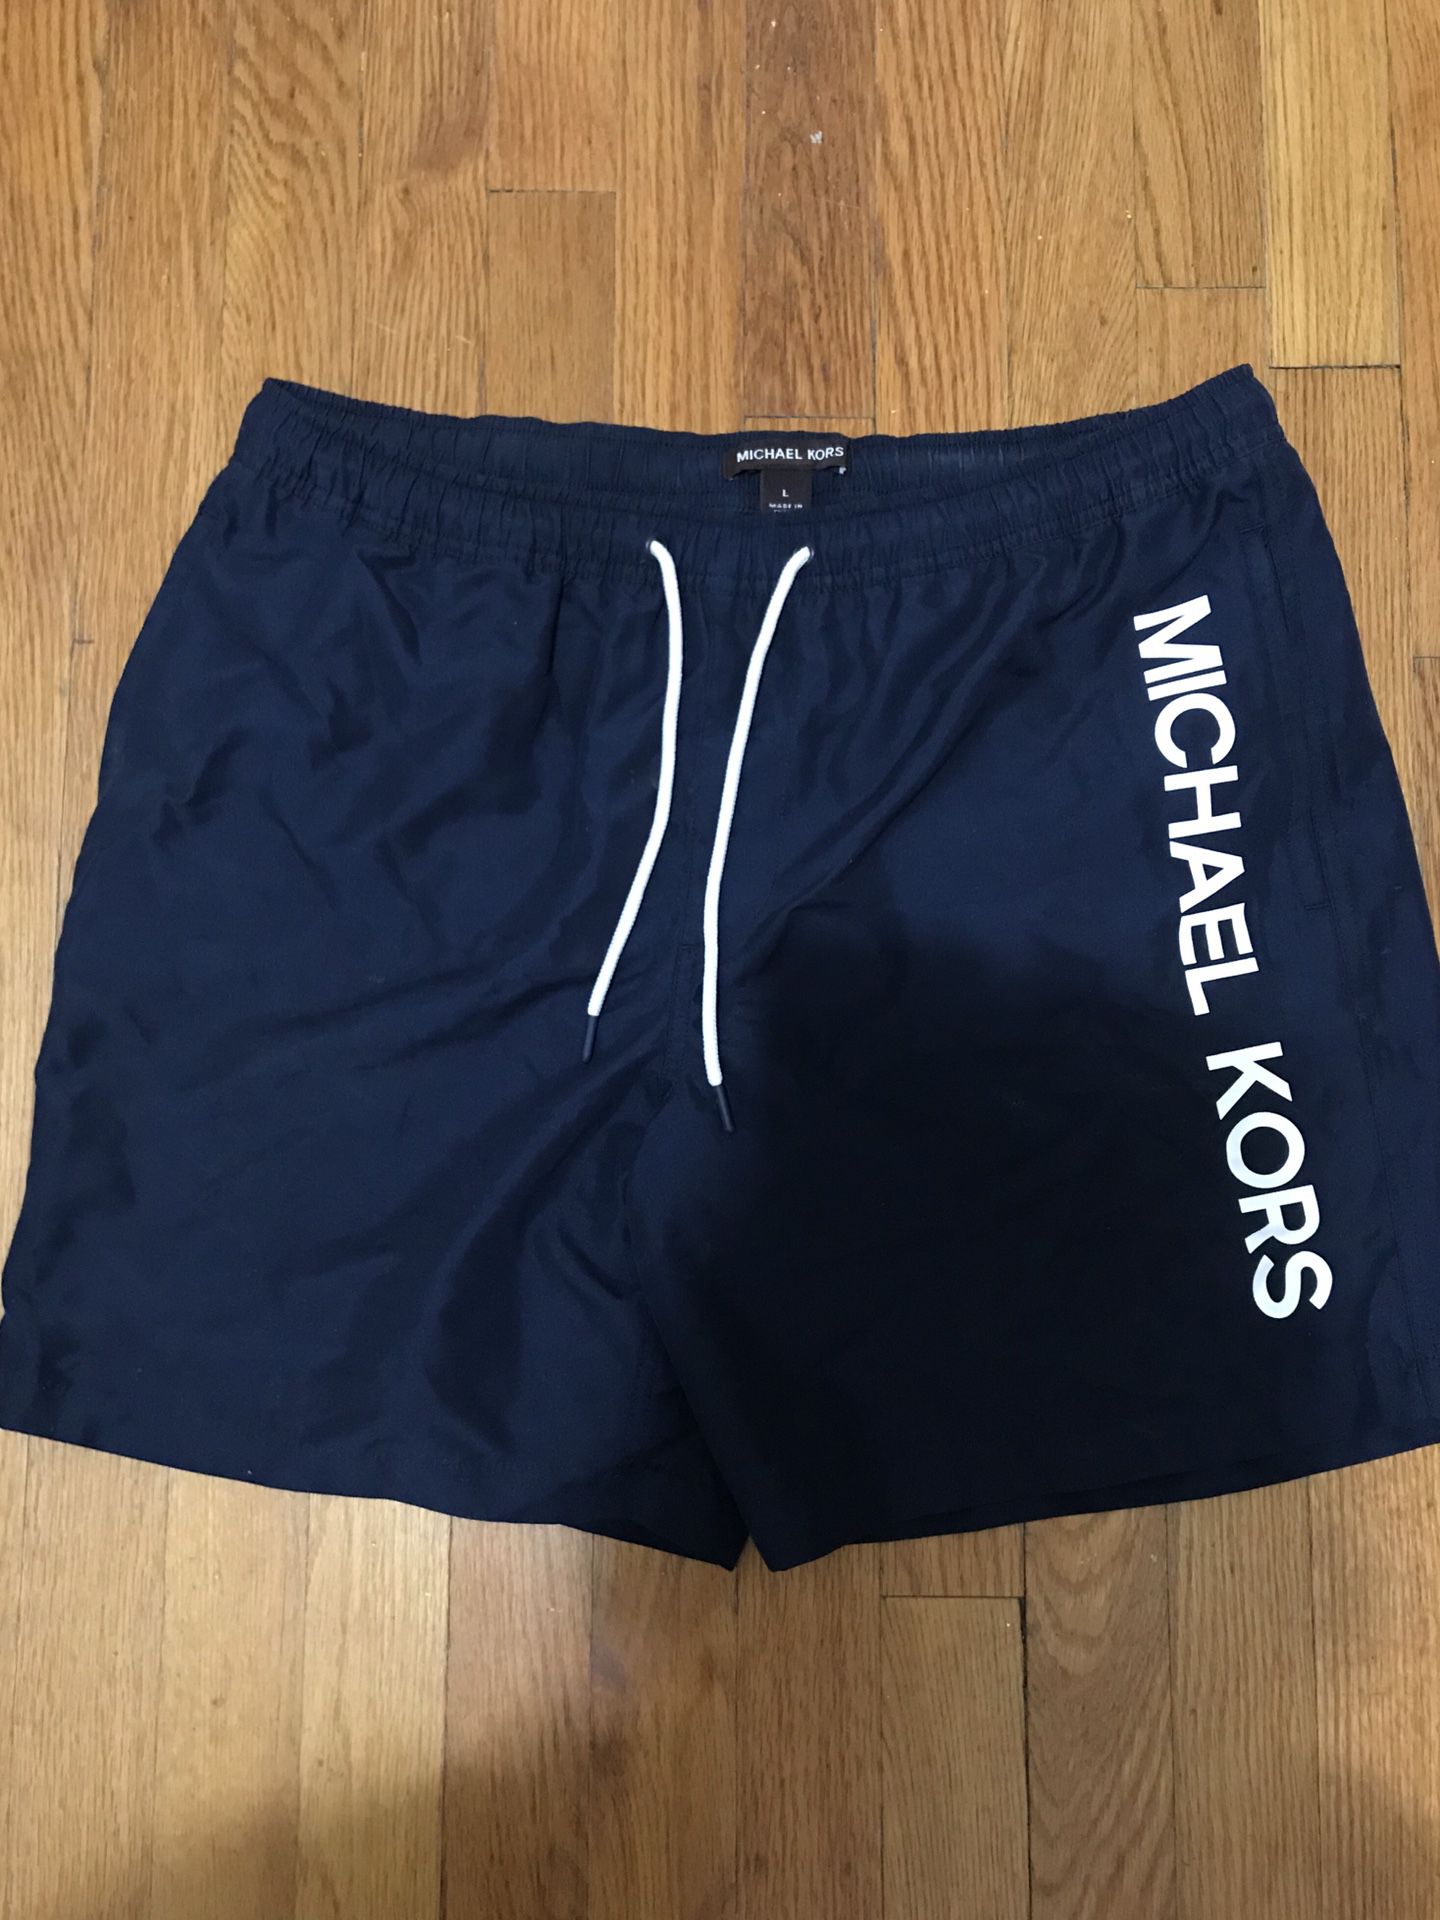 Michael Kors Men’s Bathing Suit Size Large